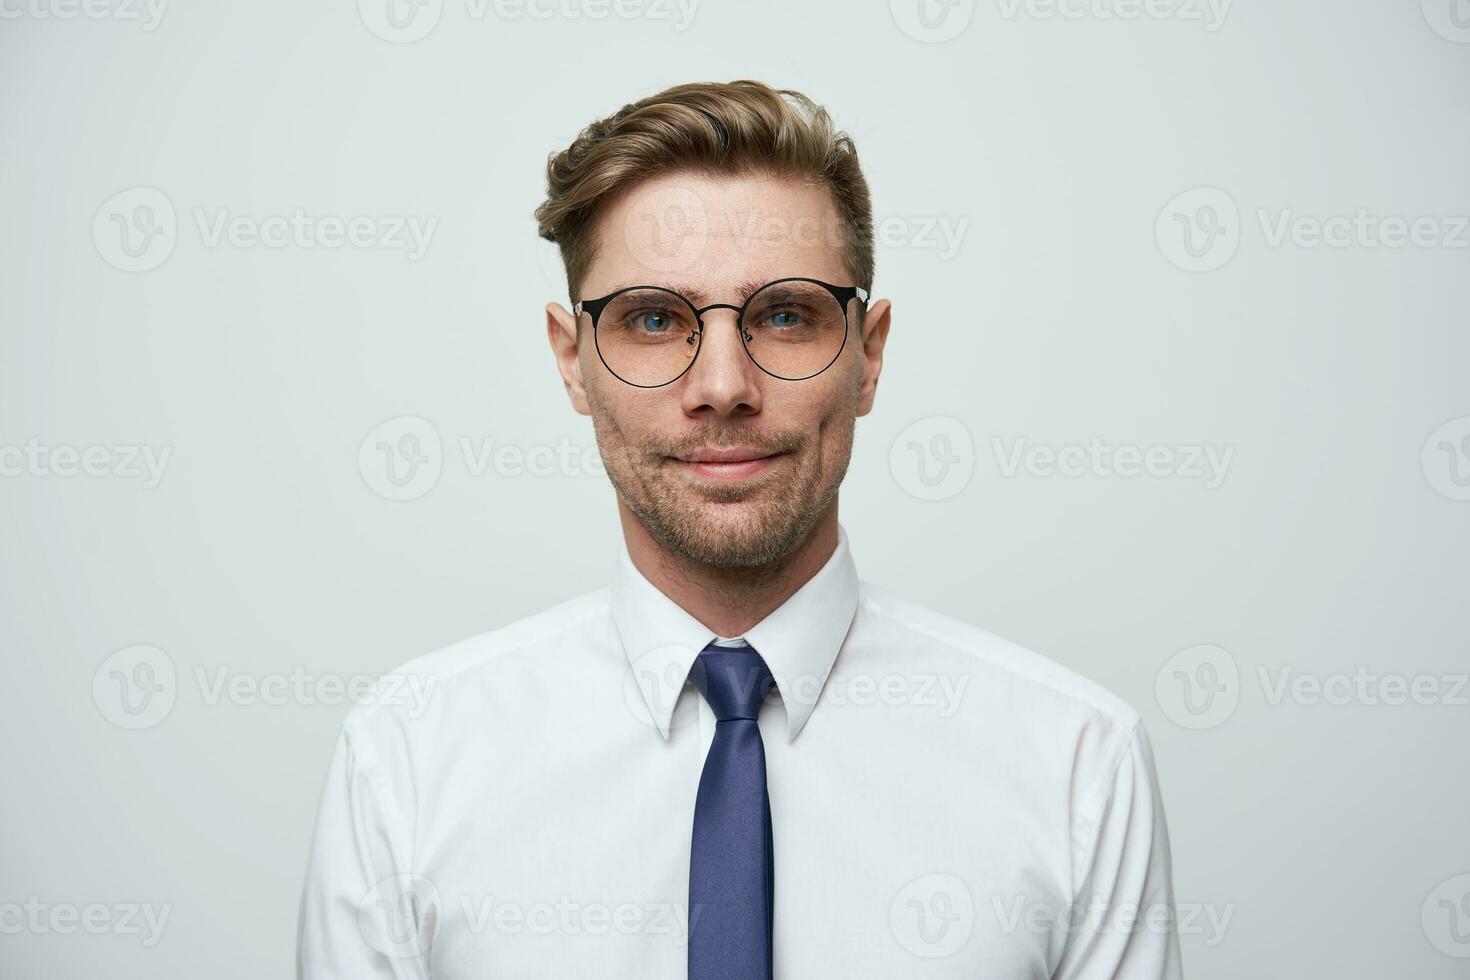 Foto wie auf Reisepass. jung Mann mit stilvoll Haarschnitt, Brille, blau Augen aussehen Gerade wenig lächelnd und selbst gesammelt, gekleidet im Weiß Hemd und Blau binden, unrasiert, Über Weiß Hintergrund